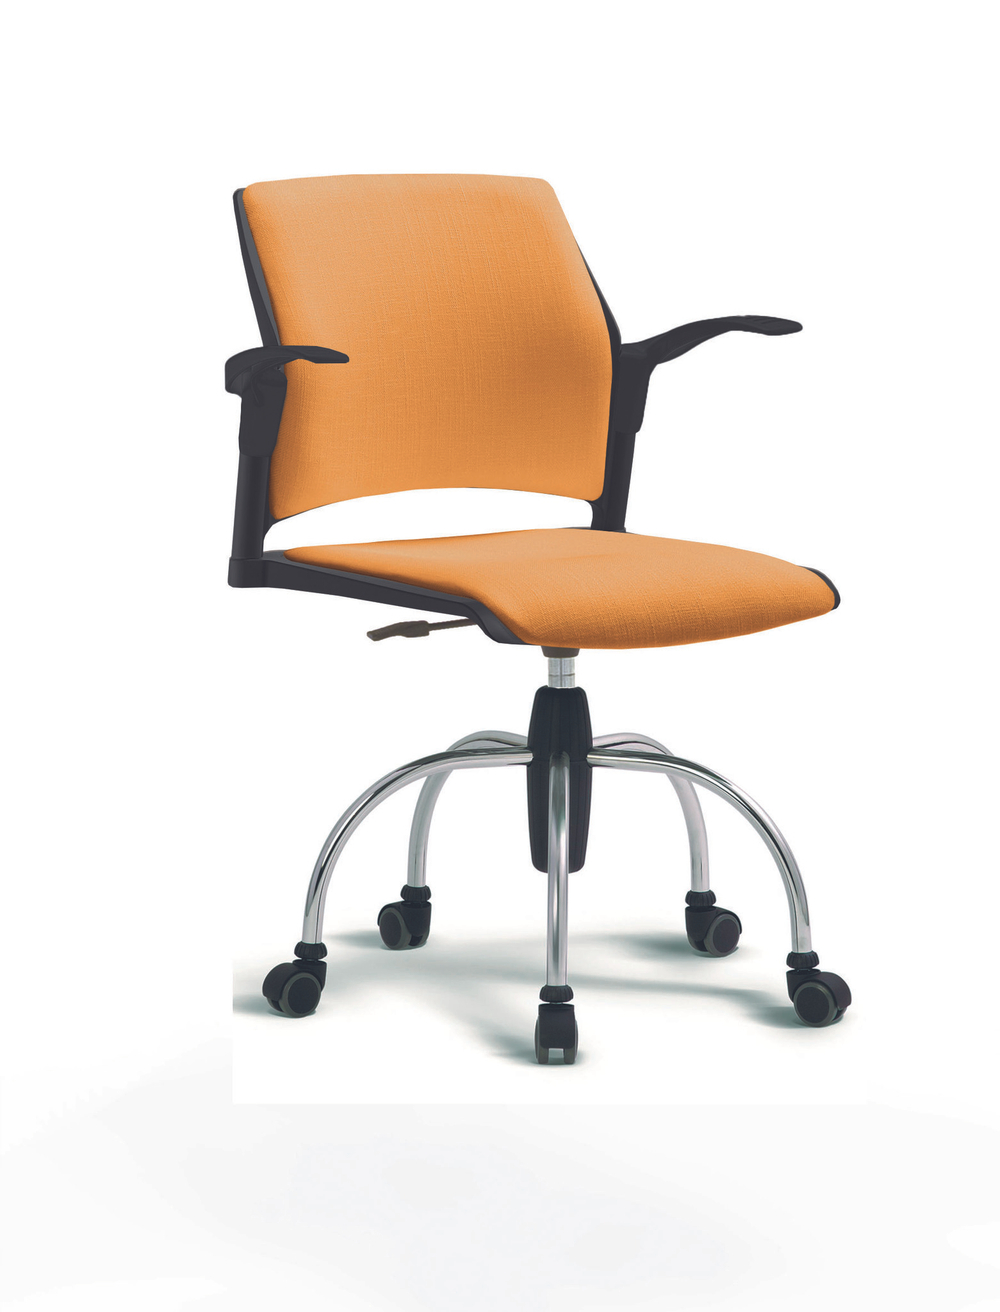 Кресло Rewind каркас хромированный, пластик черный, база паук хромированная, с открытыми подлокотниками, сидение и спинка оранжевые